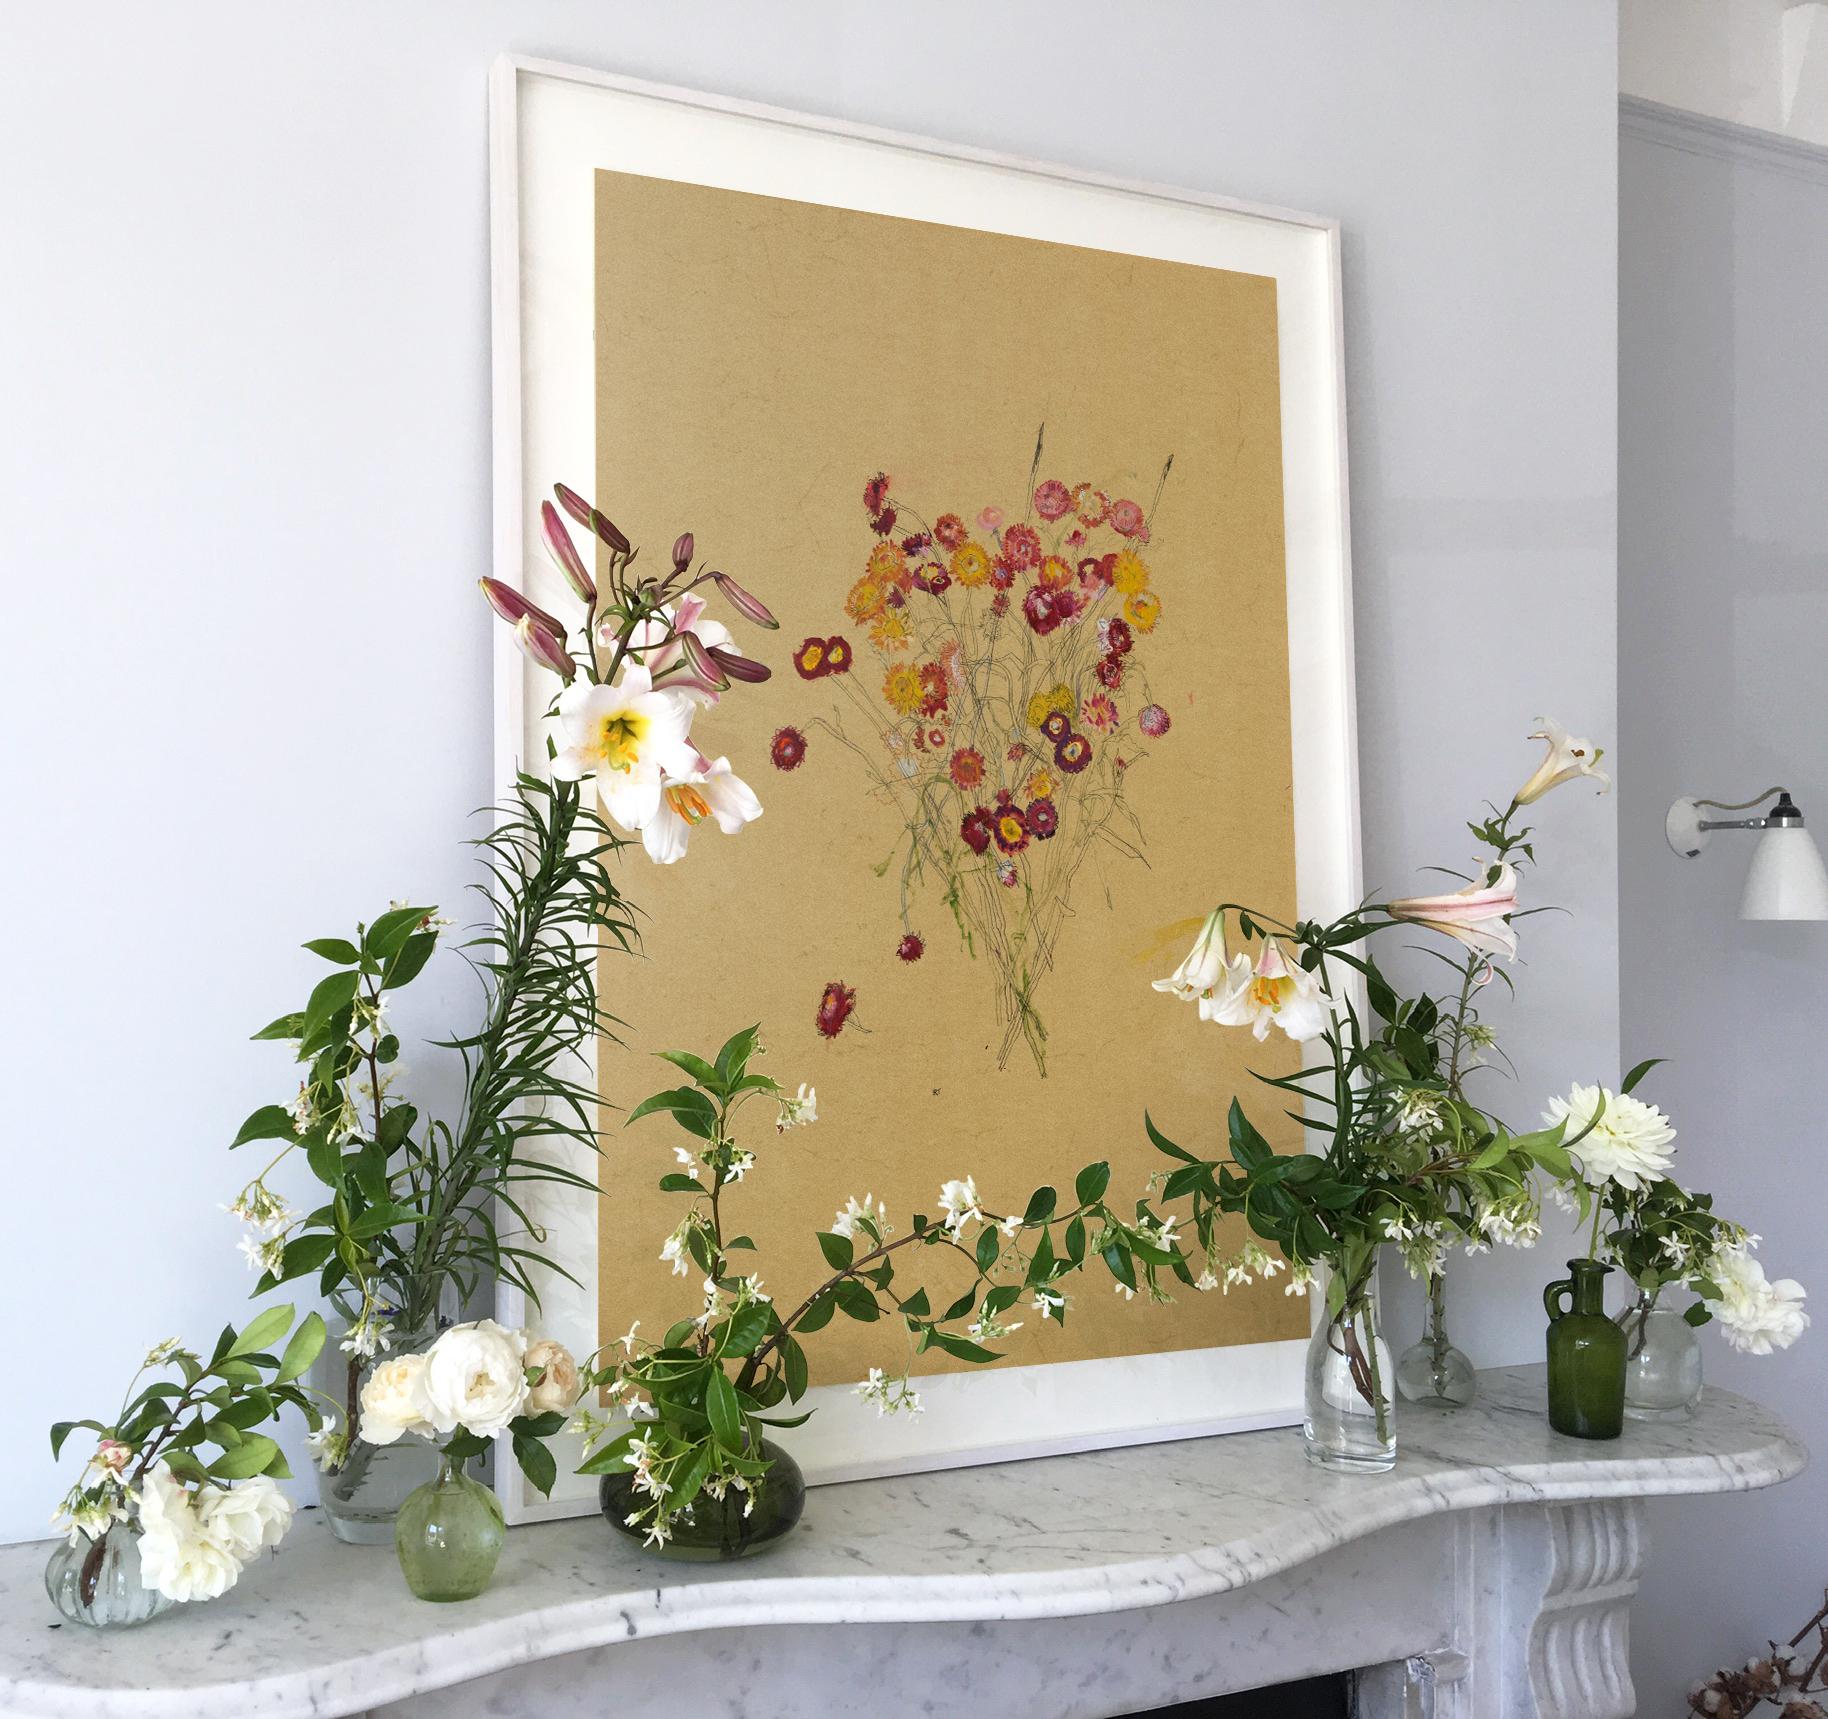 Blumen (Helichrysum), Mischtechnik auf Ockerpergament (Braun), Still-Life Painting, von Howard Tangye